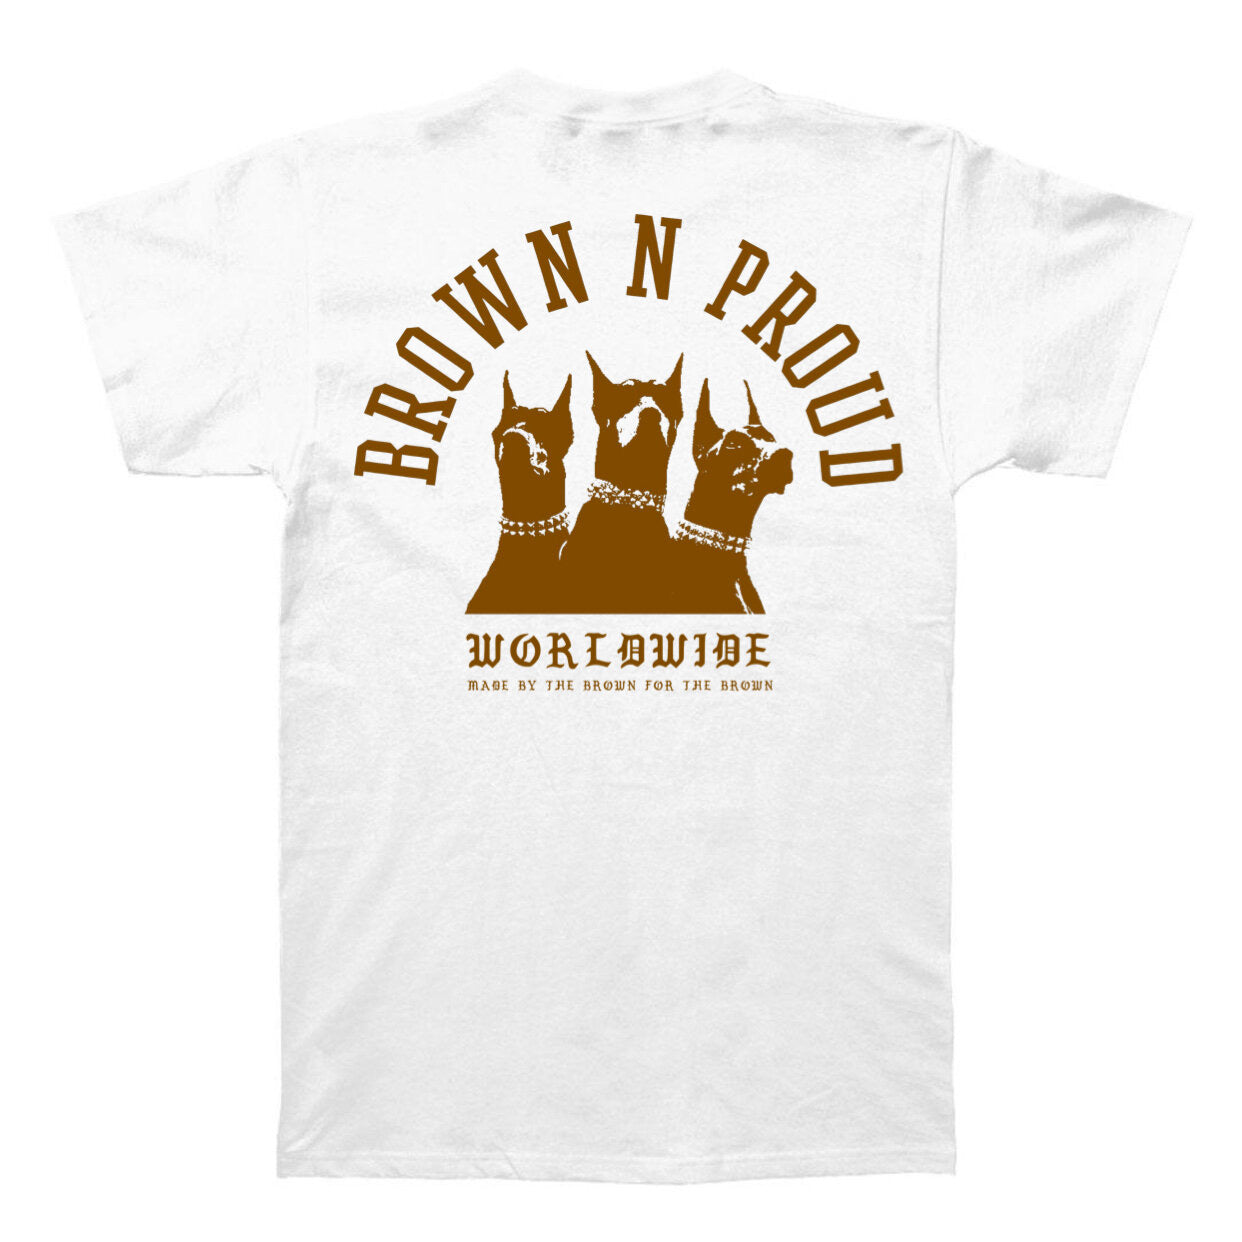 Brown N Proud Worldwide (White)